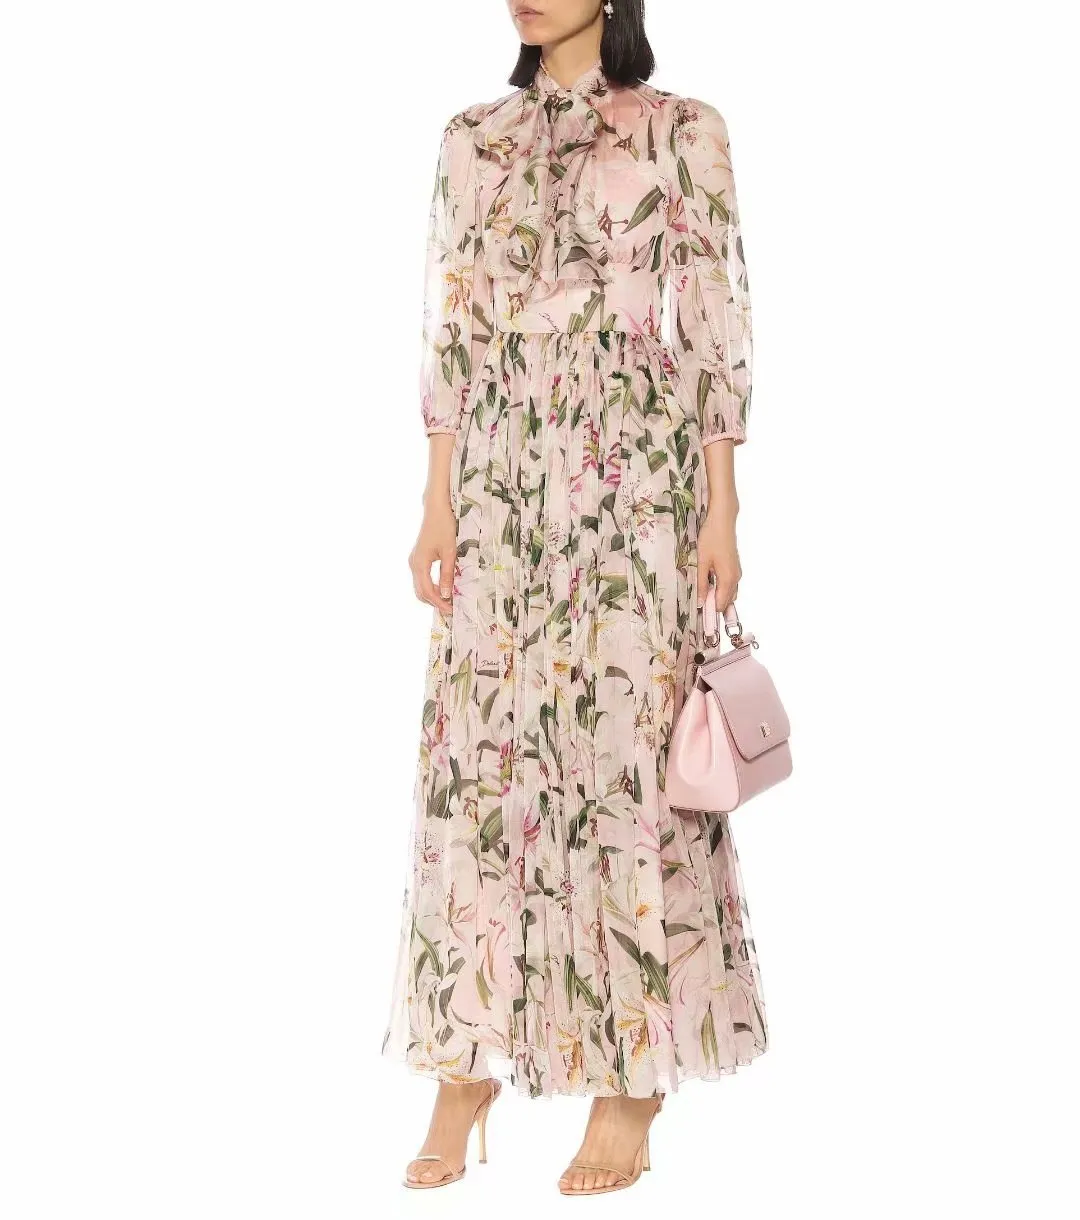 2019 herbst Runway Kleid Marke Gleichen Stil Kleid Flora Print Langarm Mitte Der Wade Luxus Prom Mode Frauen Kleidung AS